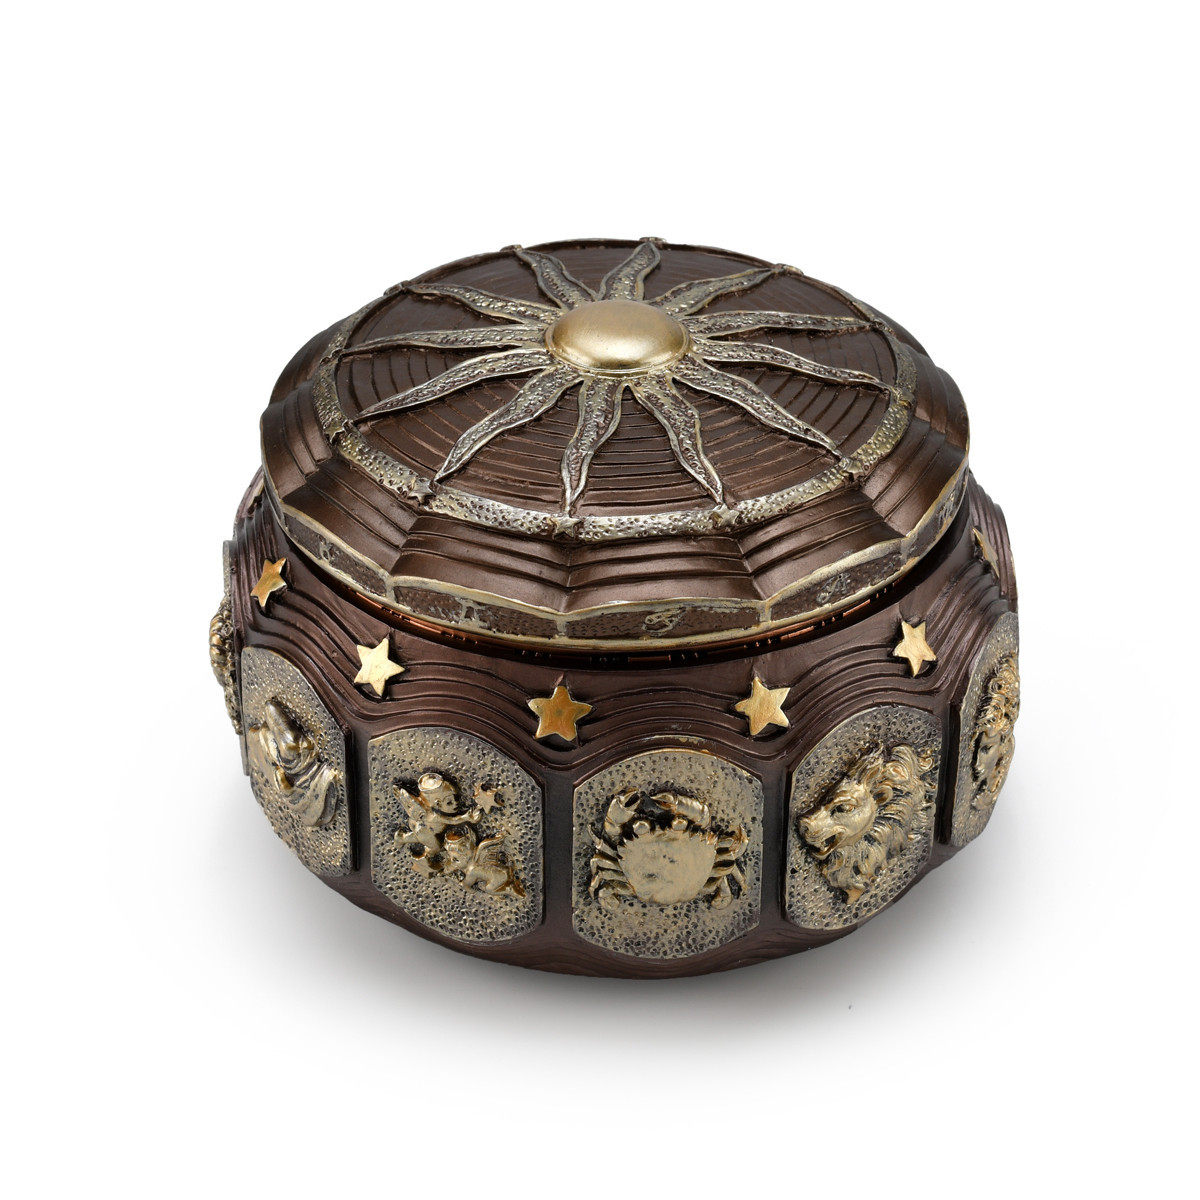 Image of Old World Astrology Zodiac-Themed Animated Musical Box & Trinket Keepsake